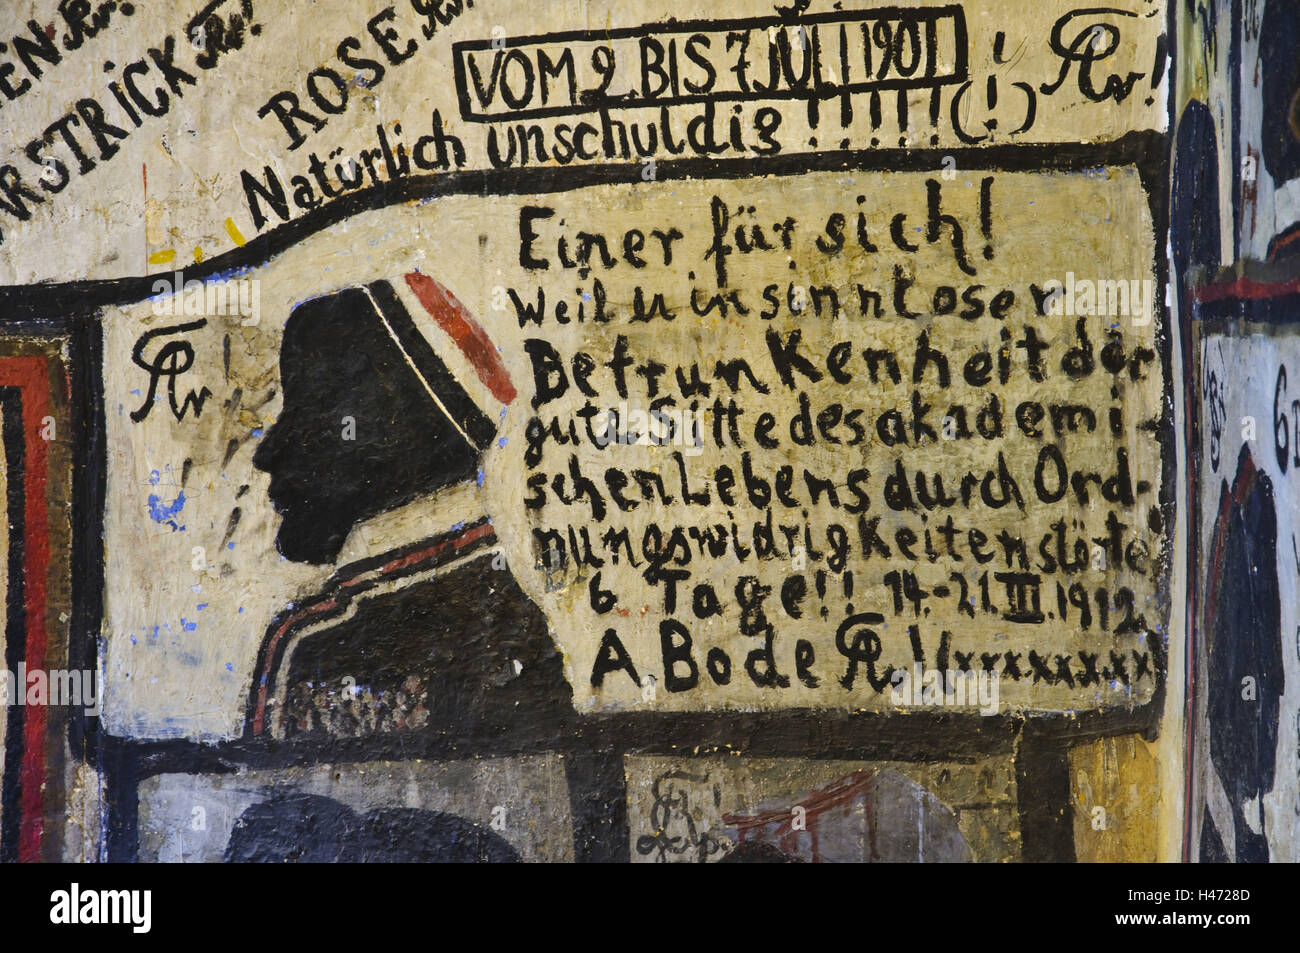 Heidelberg, studente cella di detenzione, pitture murali, graffiti, università, Baden-Württemberg, Germania, Foto Stock